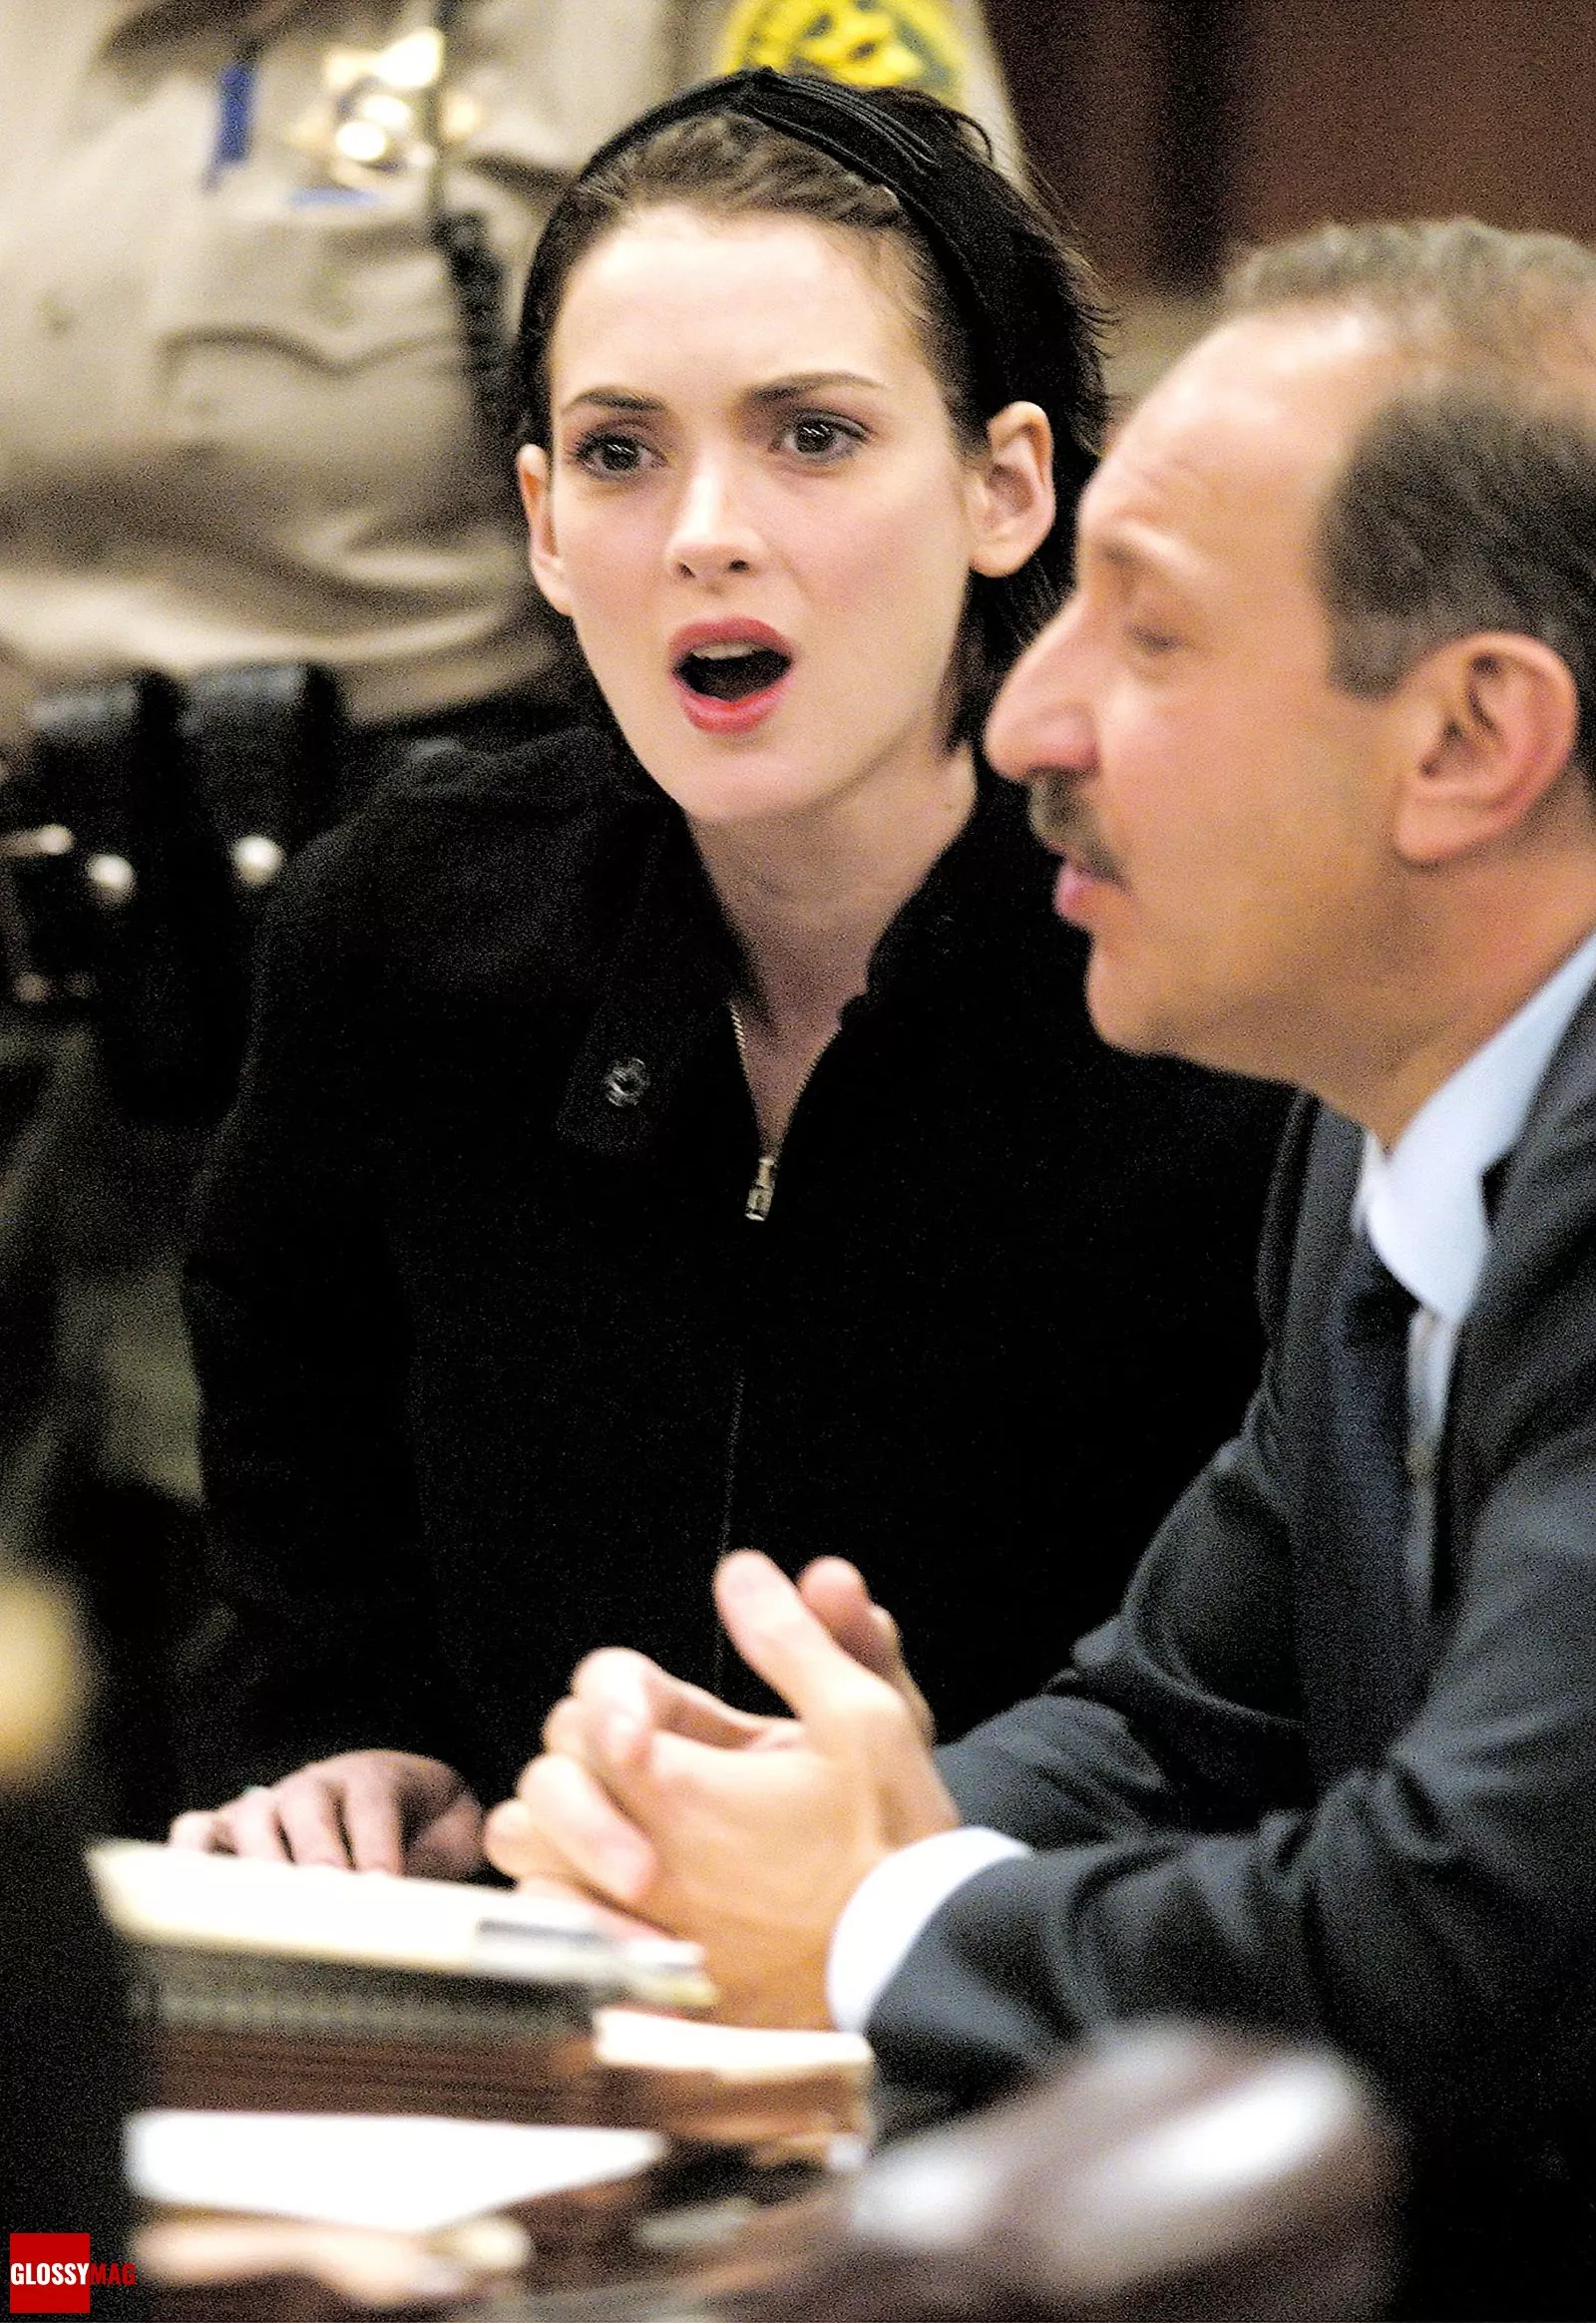 Вайнона Райдер слушает прения во время вынесения приговора по делу о краже в магазине, 6 декабря 2002 г.